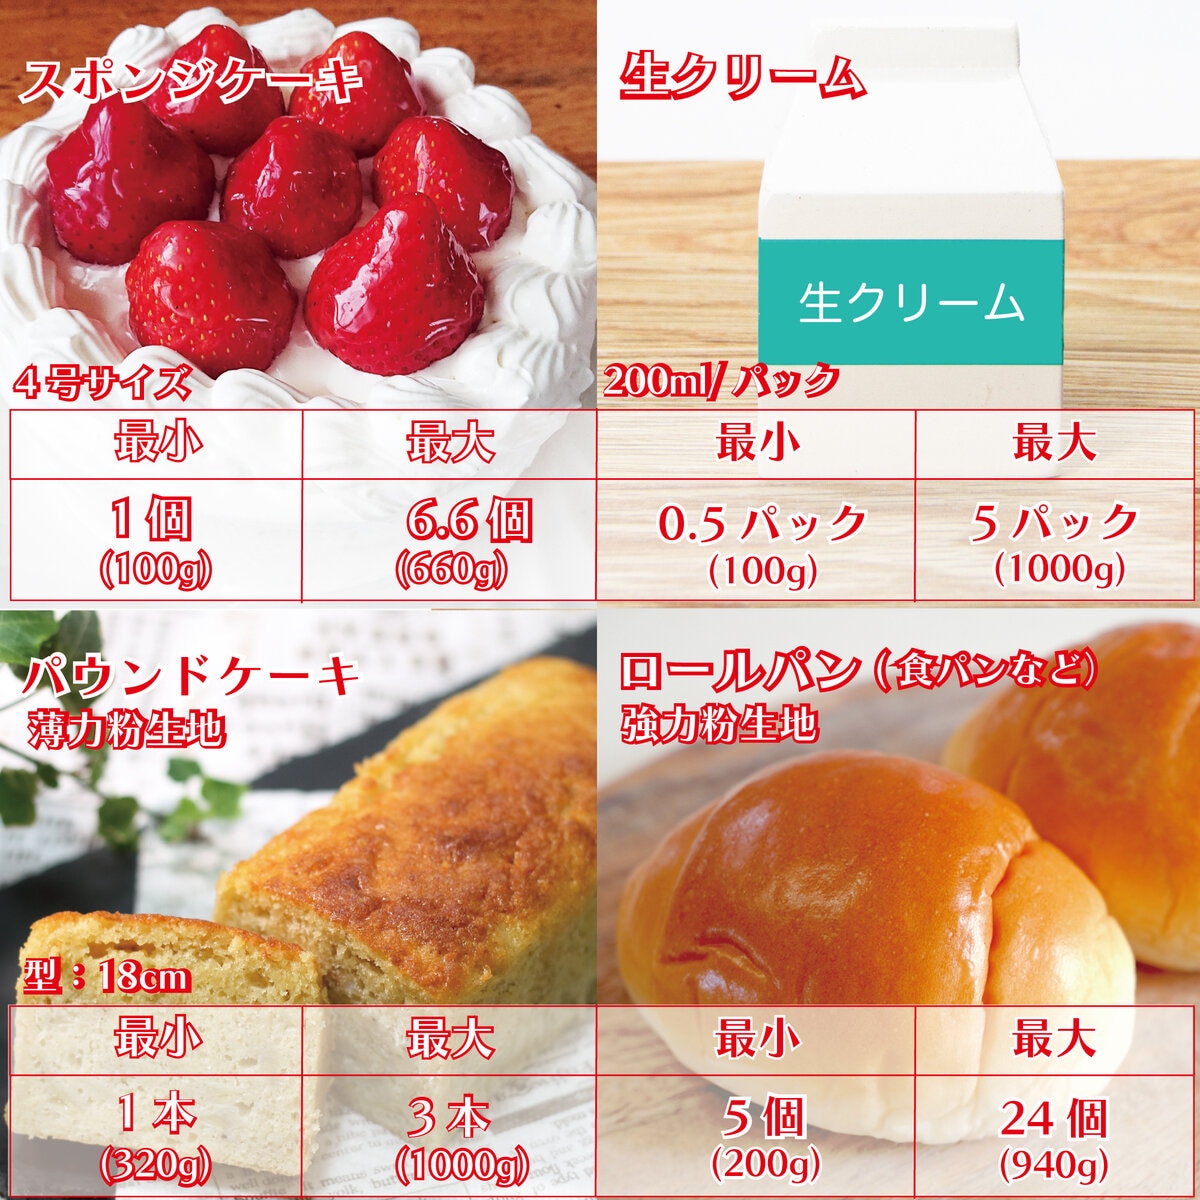 キッチンエイド スタンドミキサー4.3リットル レッド | Costco Japan